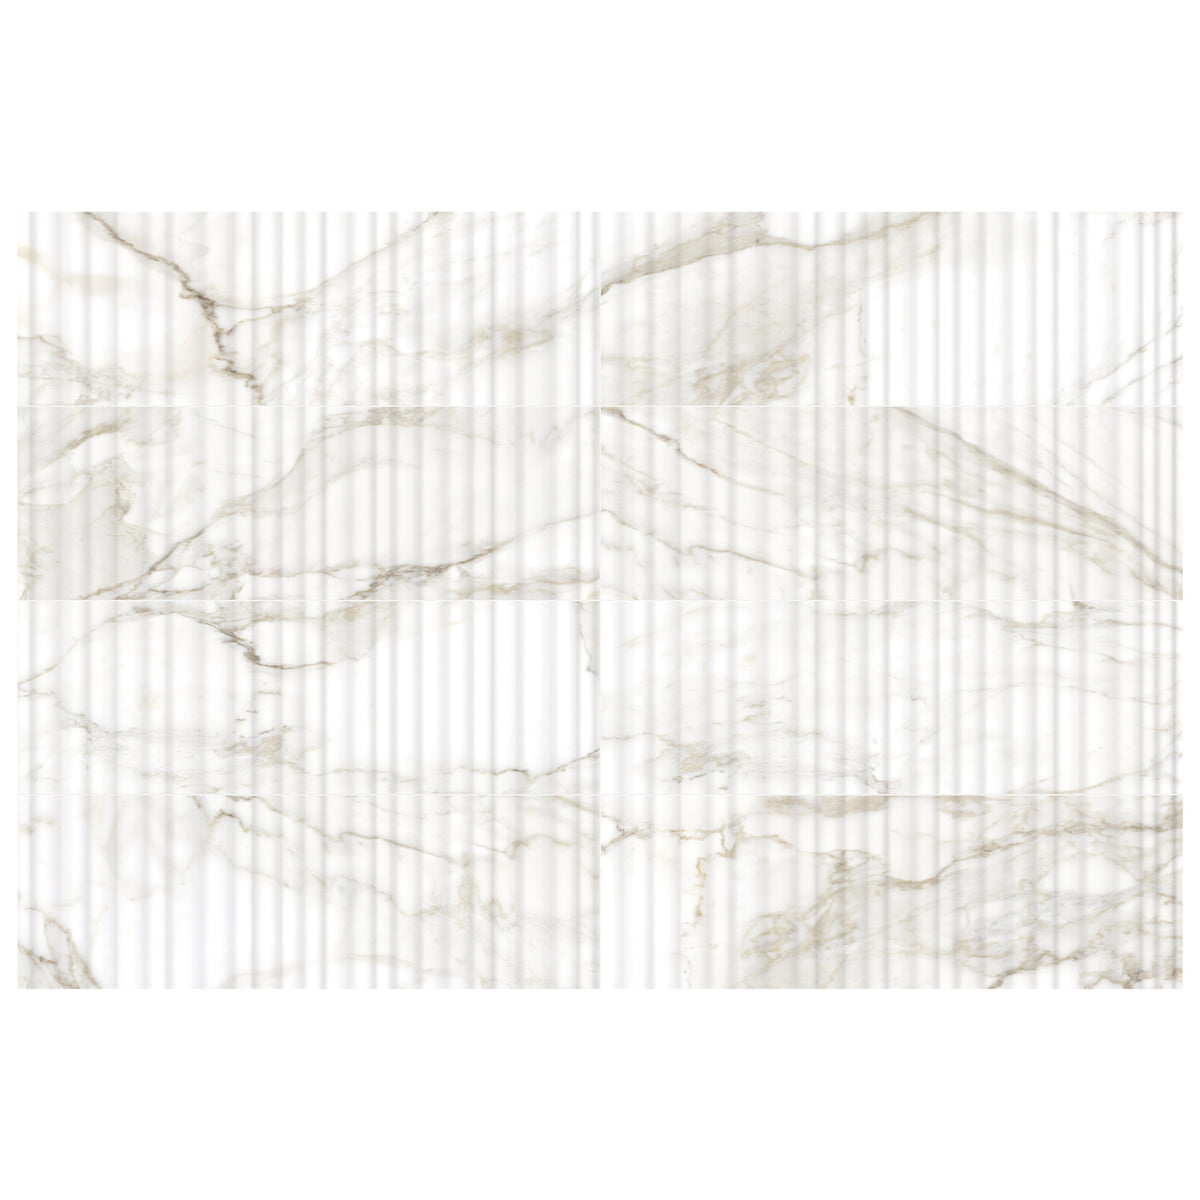 Anatolia - Raffino 12 in. x 36 in. Alto Rectified Glazed Ceramic Tile - Calacatta Dolce